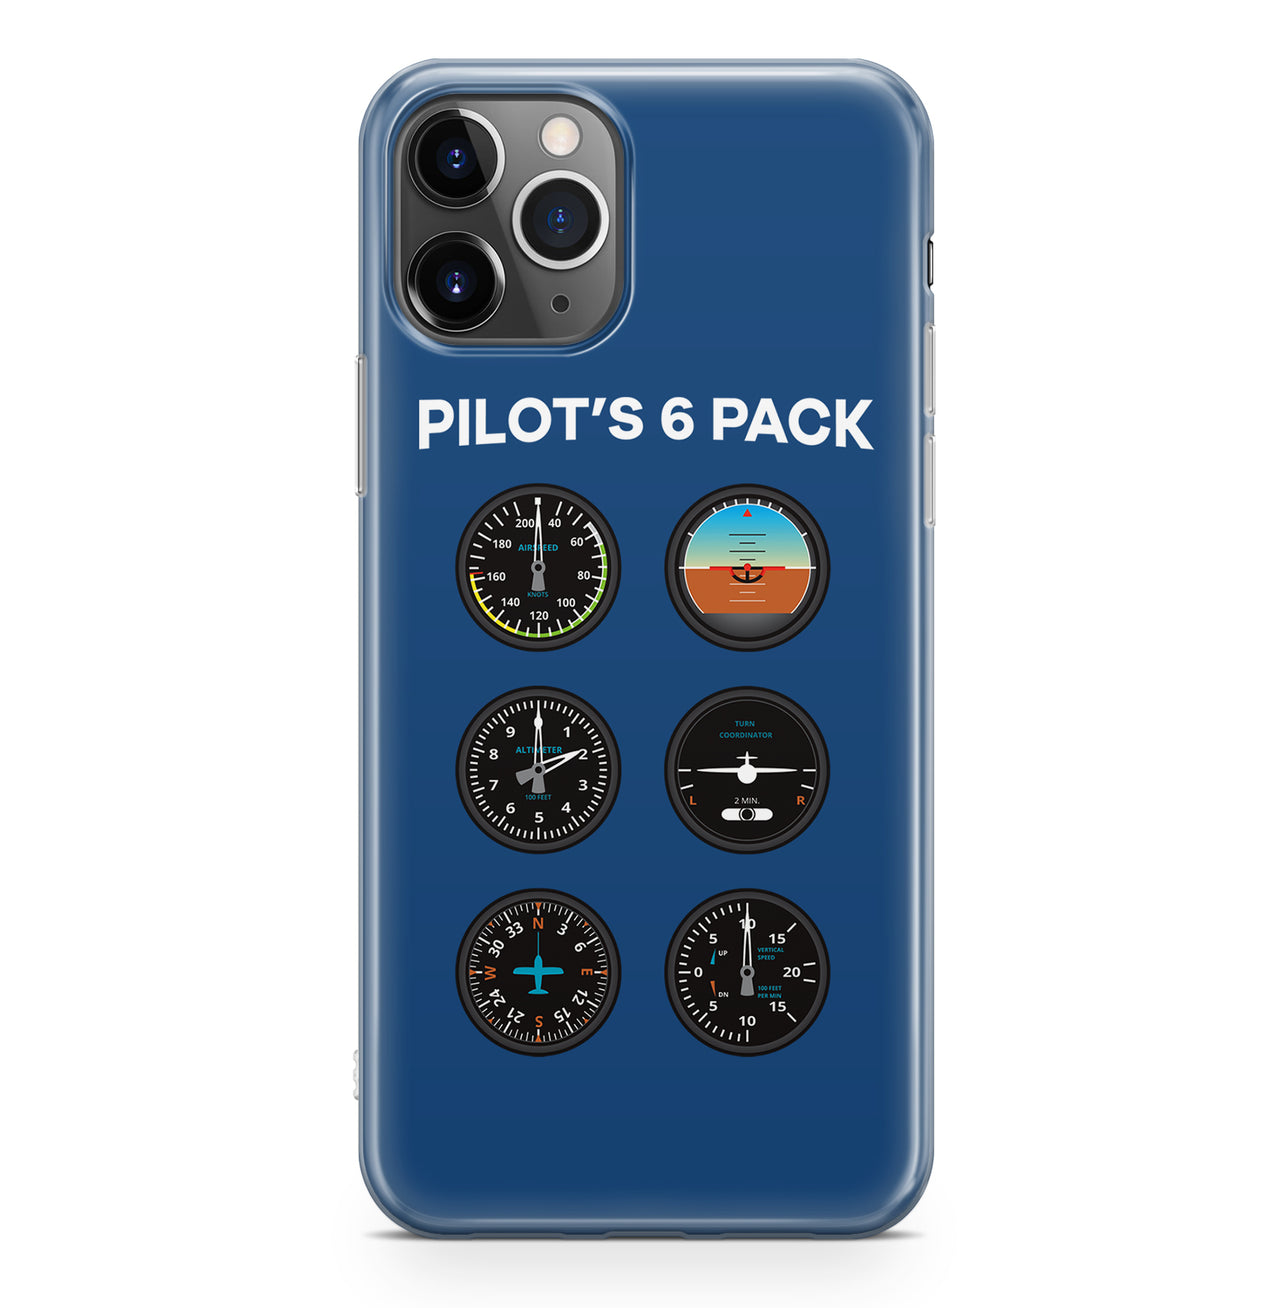 Pilot's 6 Pack Designed iPhone Cases